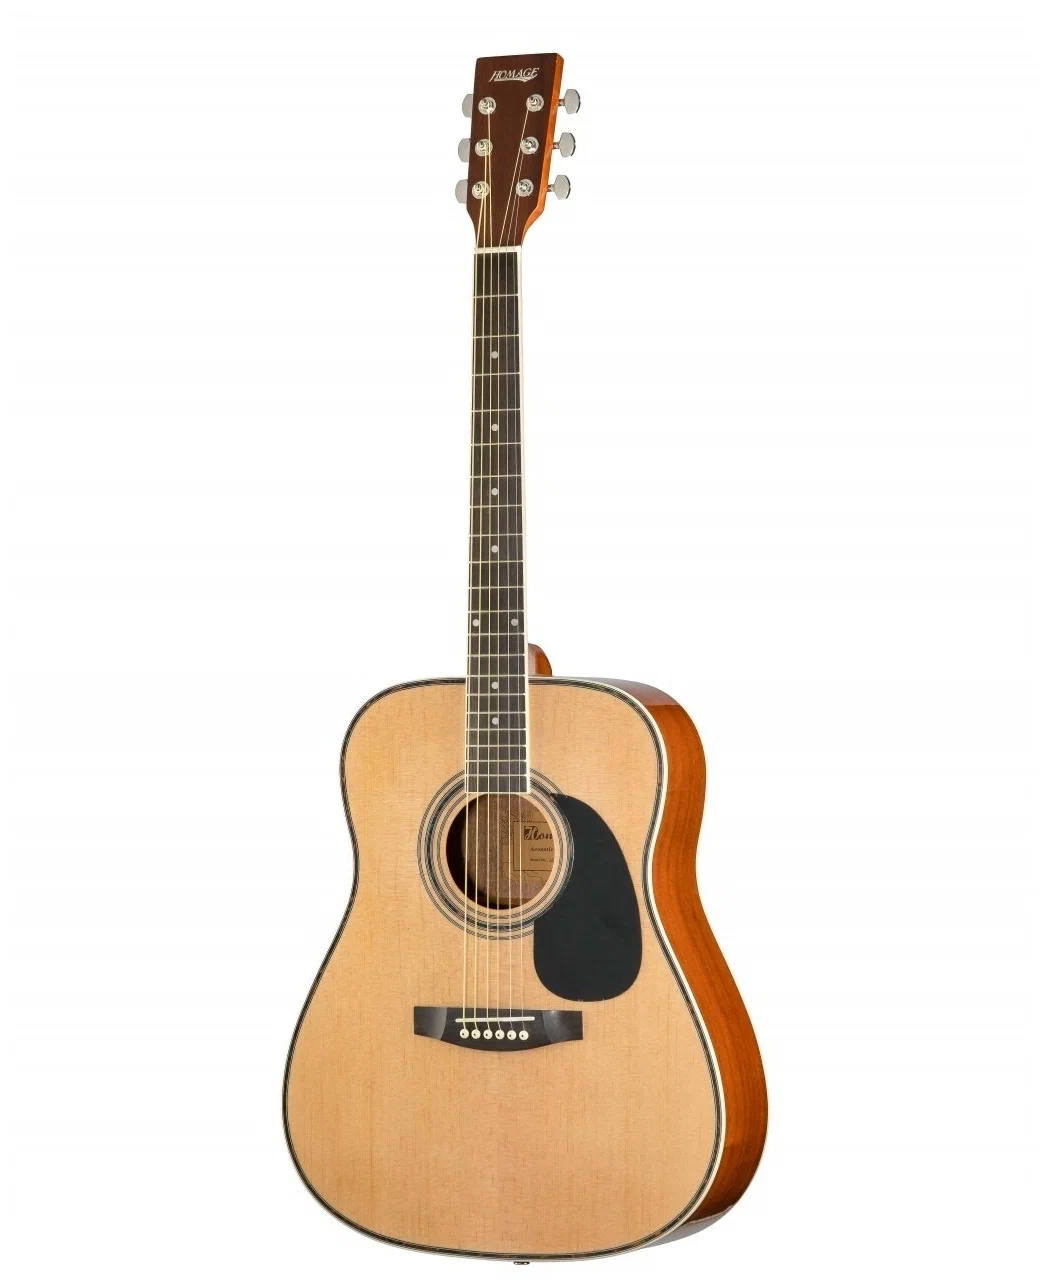 Акустические гитары Homage LF-4123-N 34шт комплект аксессуаров для гитары гитара выбирает капо акустическая гитара струны мост булавки костные струны